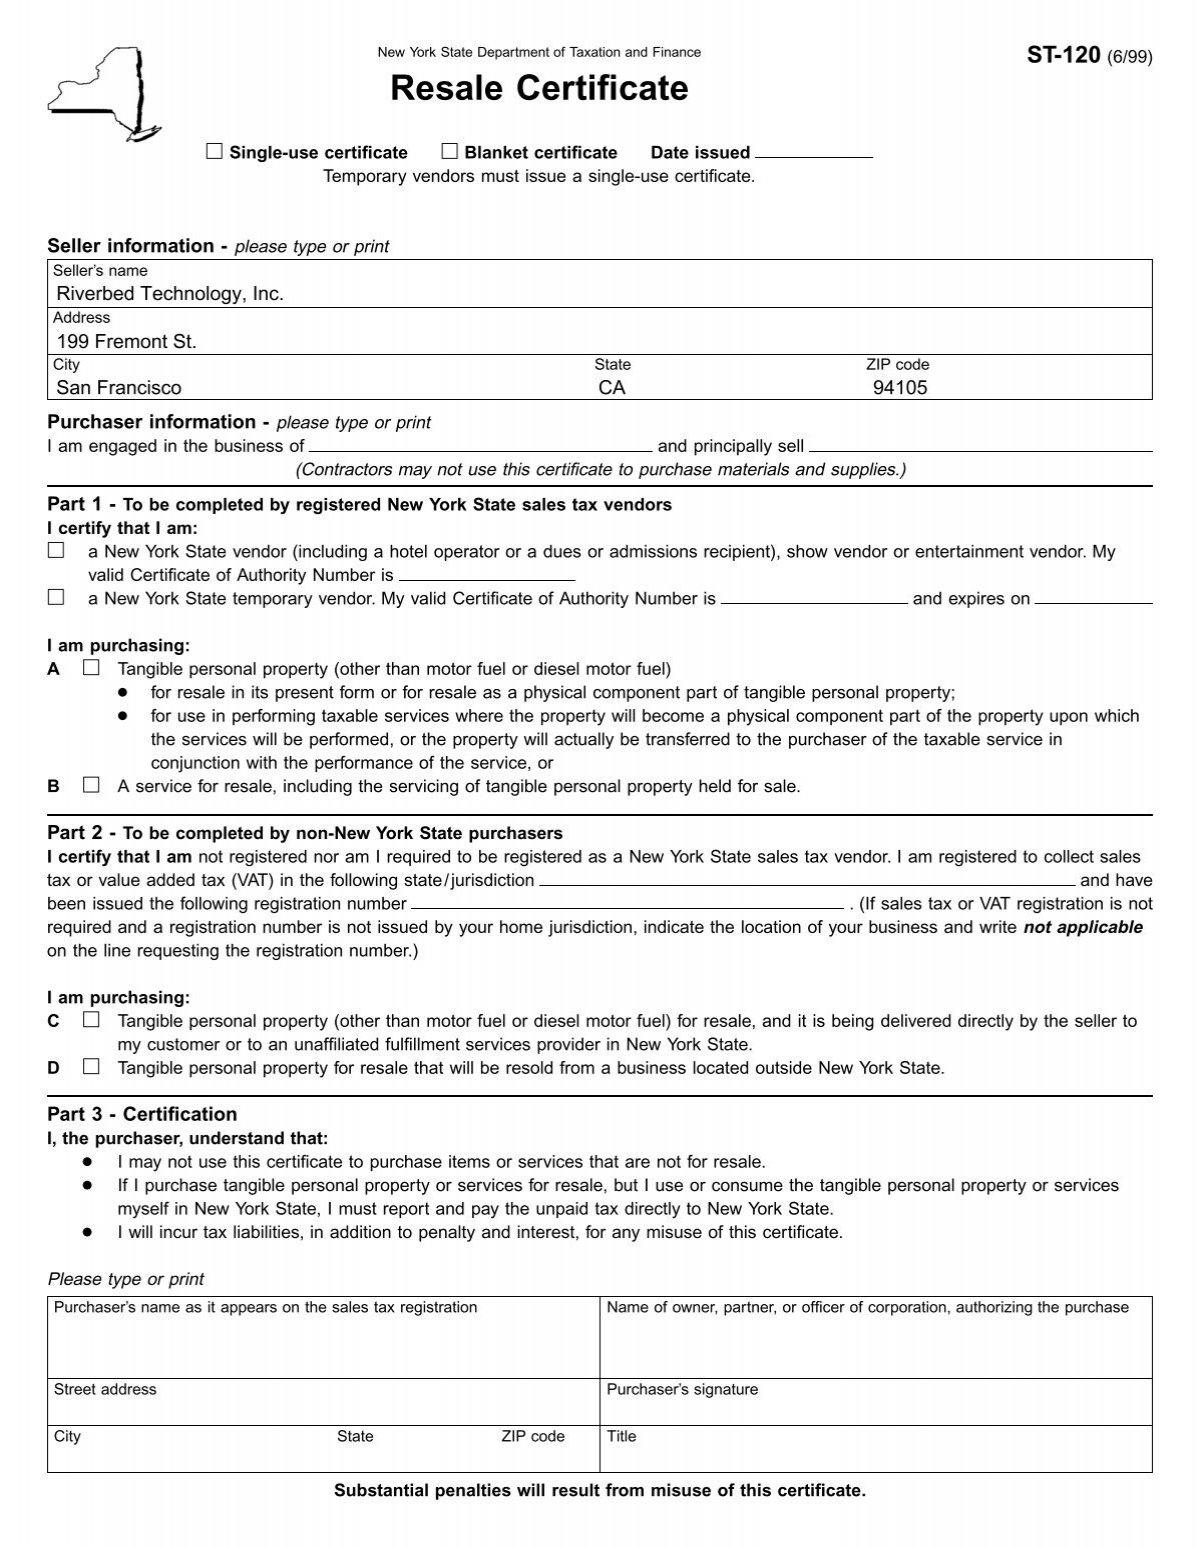 form-st-120-june-1999-resale-certificate-st120-riverbed